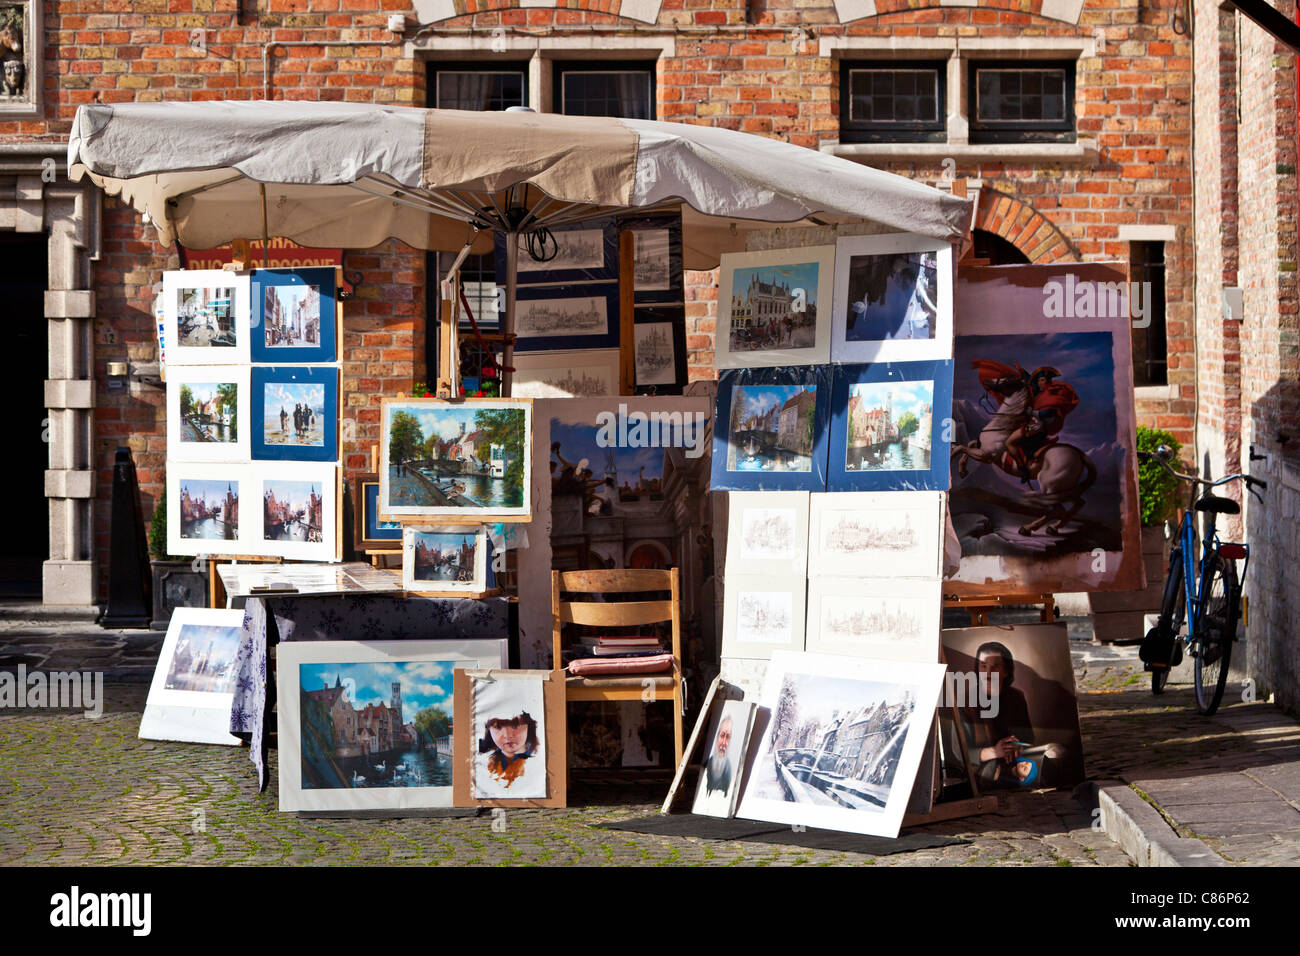 Un étal de souvenirs vendant des impressions touristiques, peintures et dessins dans la Huidenvettersplein ou la place des tanneurs, Bruges, Belgique Banque D'Images